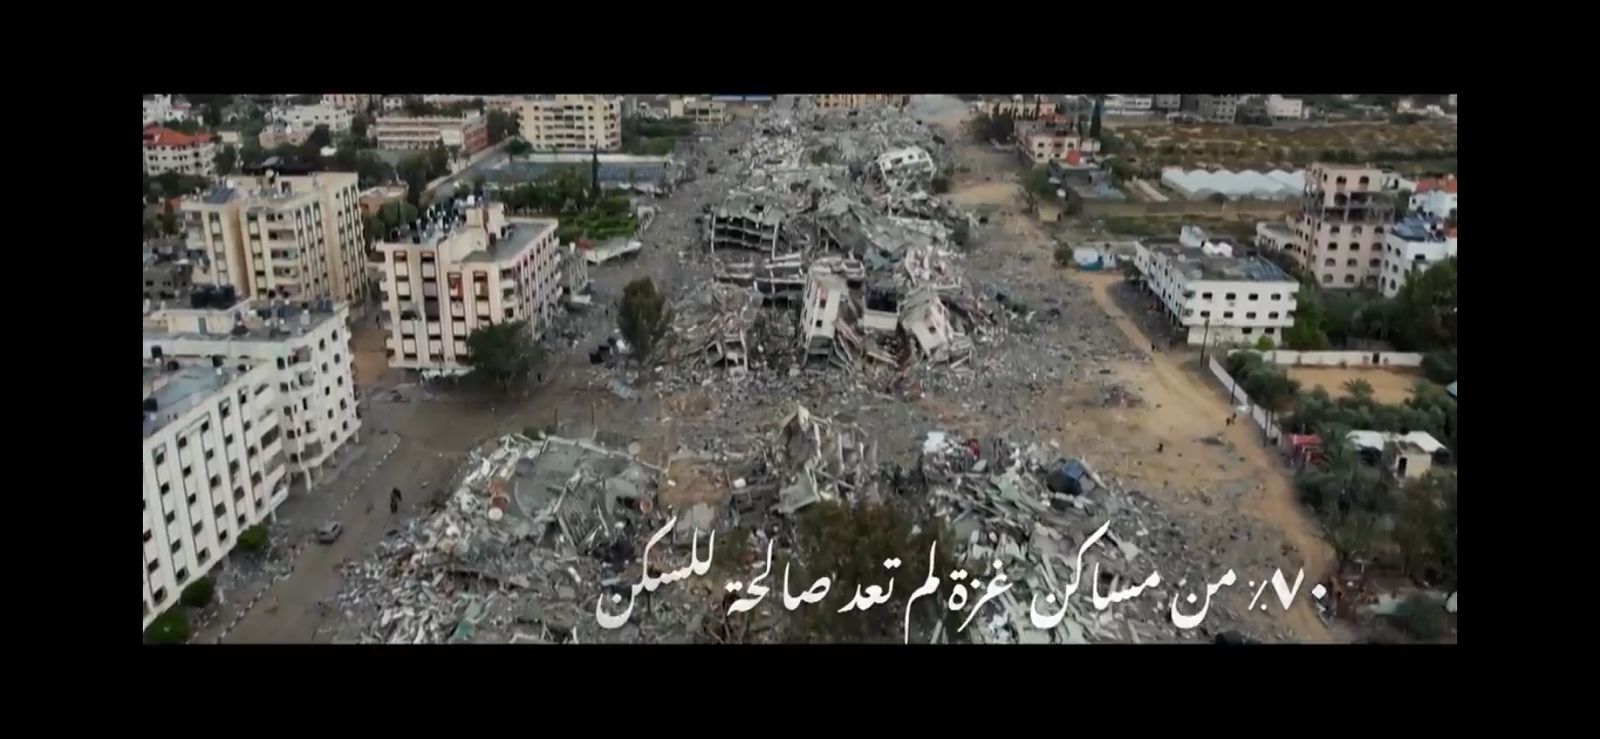 مليحة الحلقة 15 تستعرض حجم الخراب والتدمير في فلسطين (2)